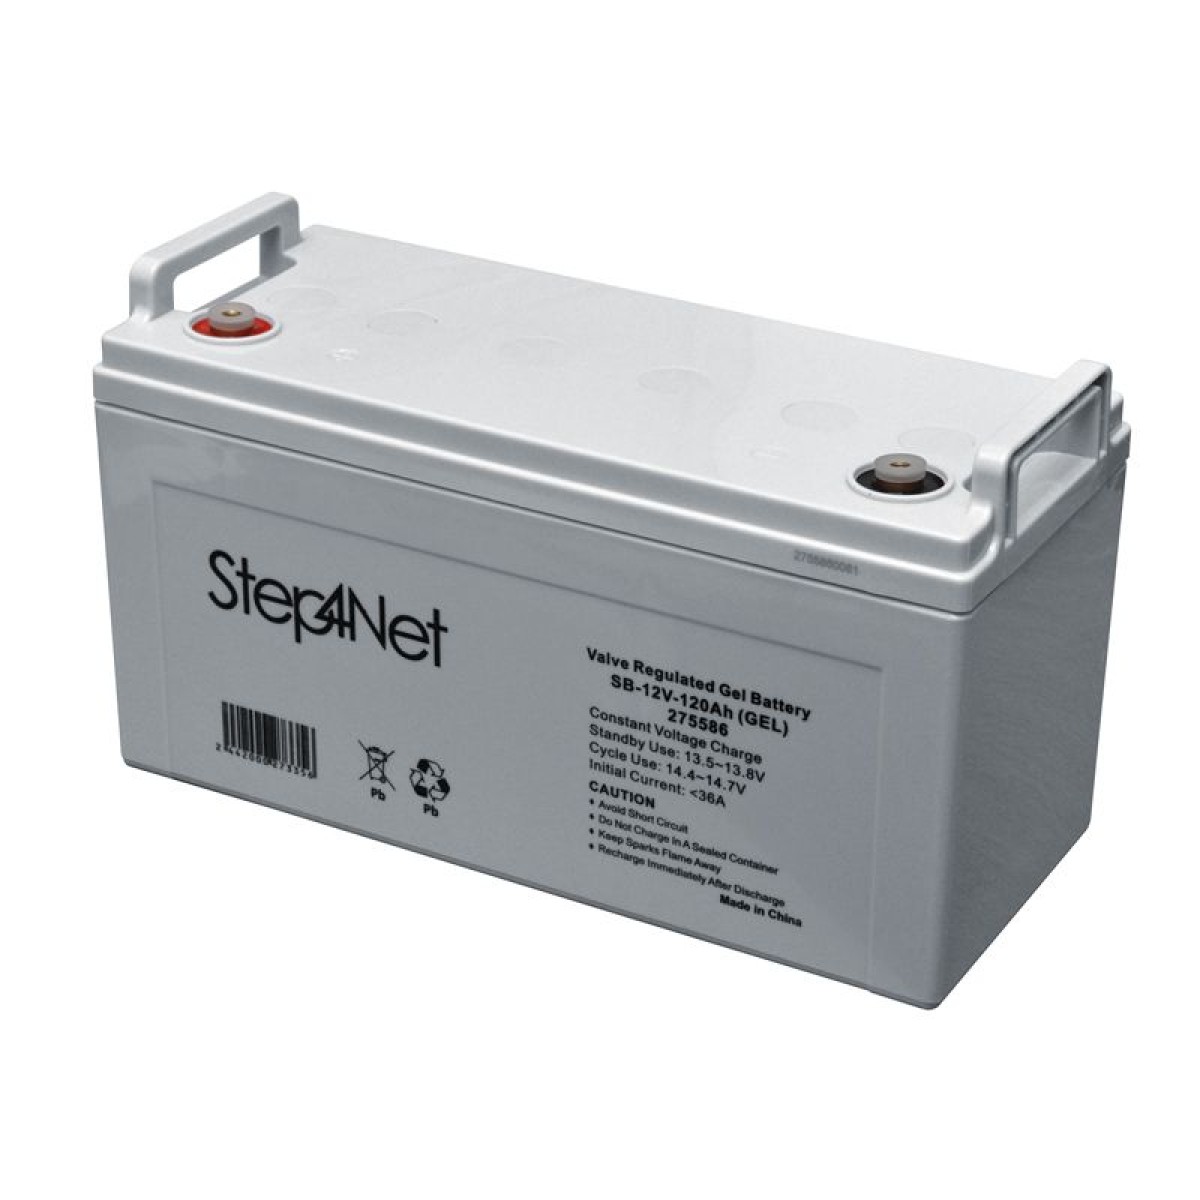 Свинцово-кислотный аккумулятор Step4Net SB-12V-120Аh (GEL) (без НДС) 256_256.jpg